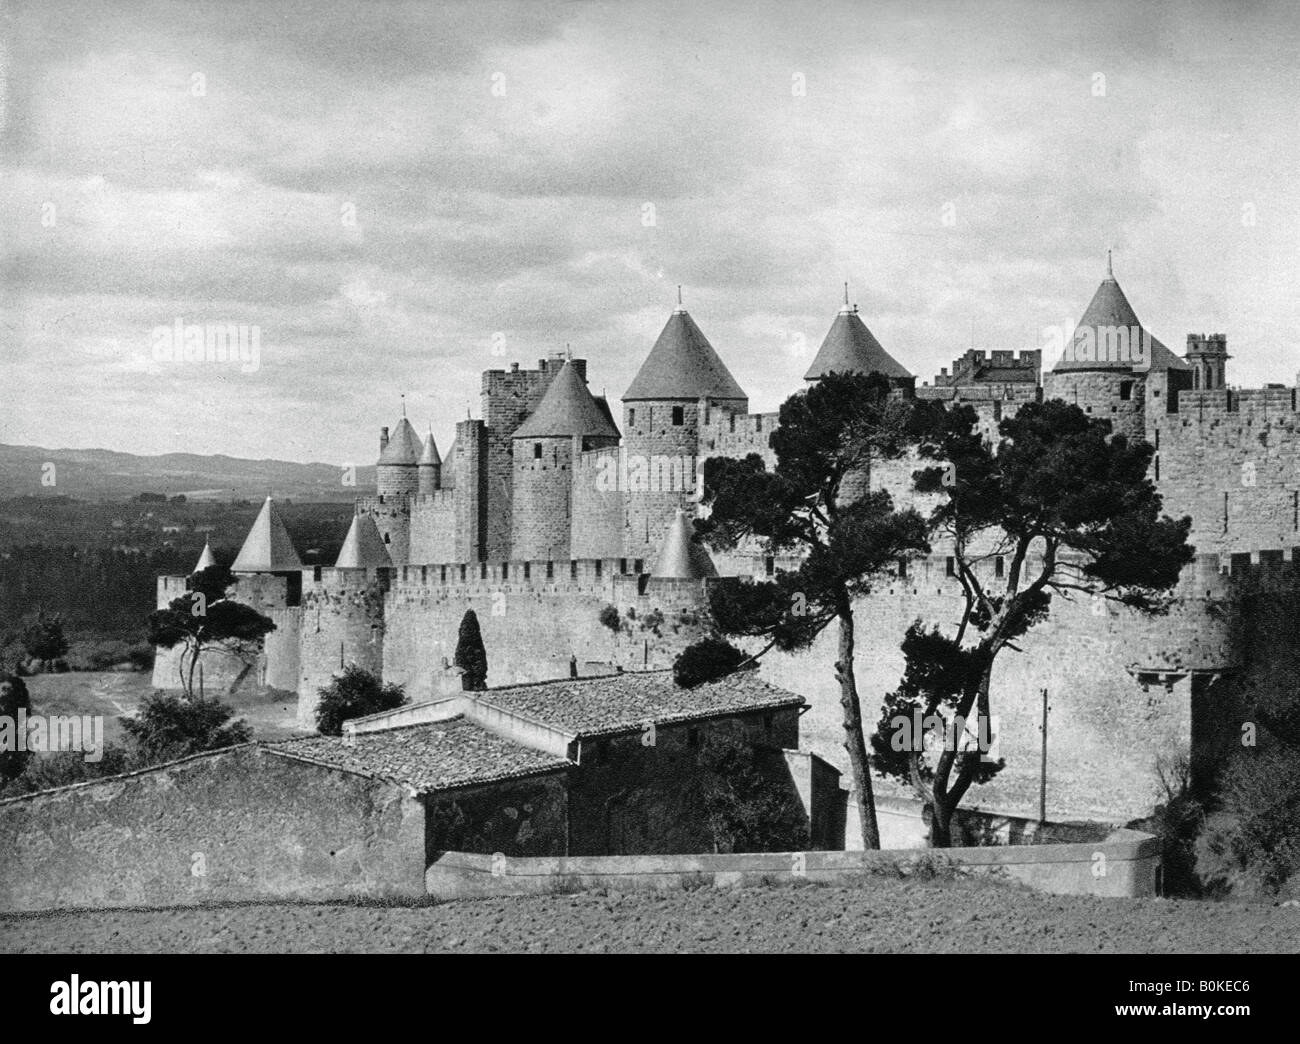 Carcassonne, France, 1937. Artist: Martin Hurlimann Stock Photo